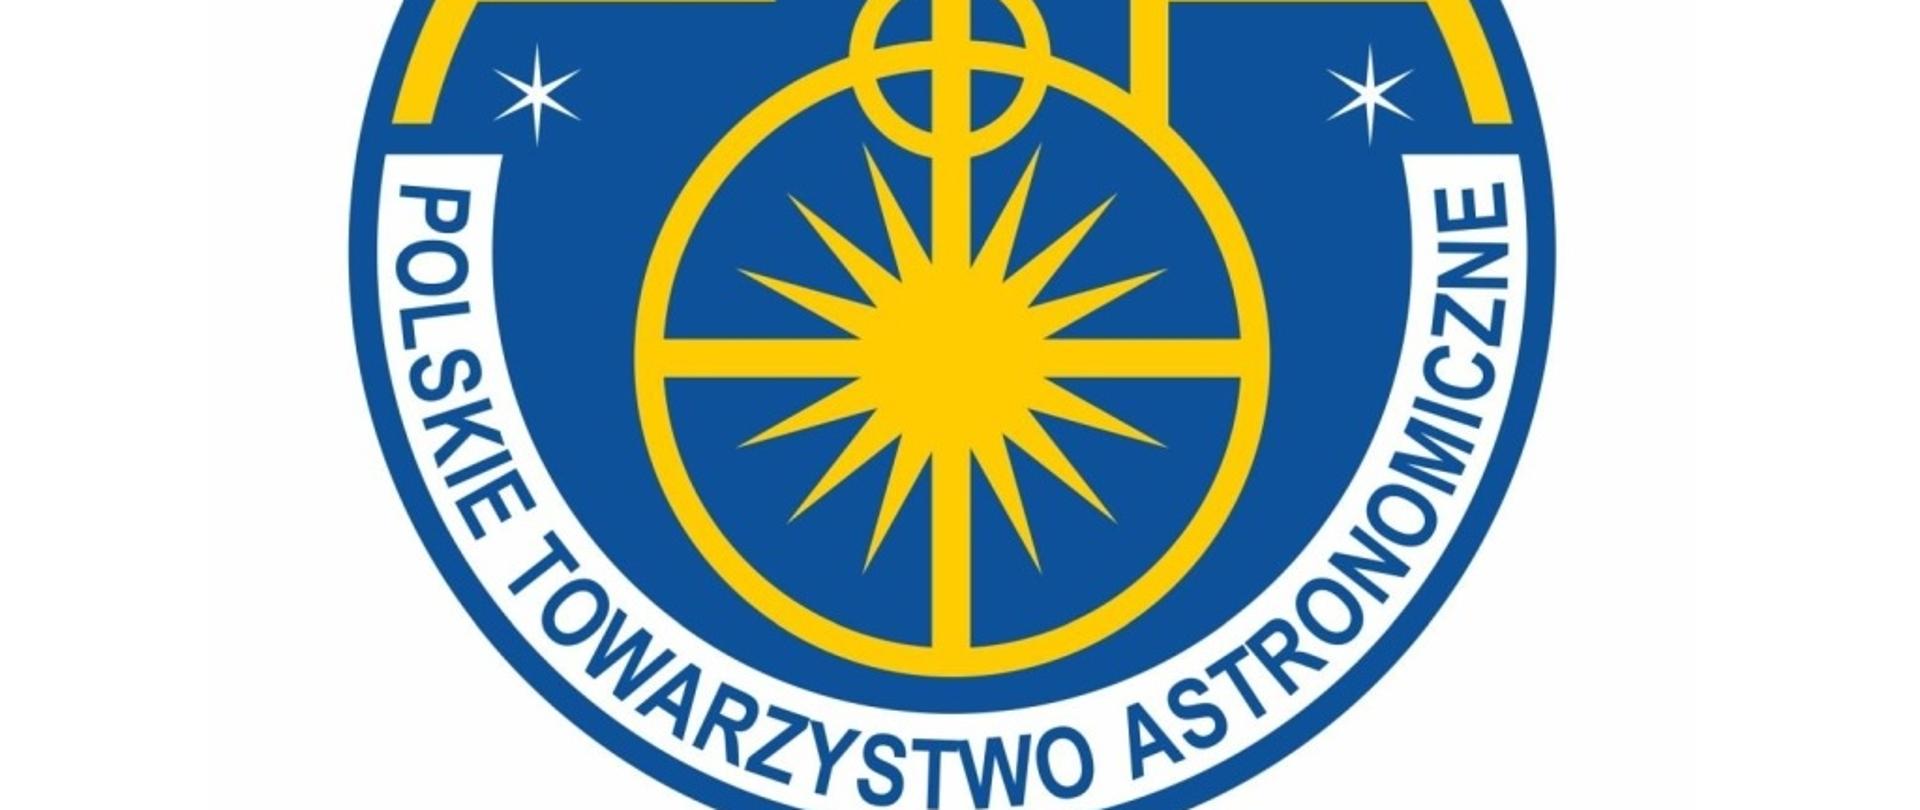 Logo Polskiego Towarzystwa Astronomicznego - stylizowane litery PTA na niebieskim tle